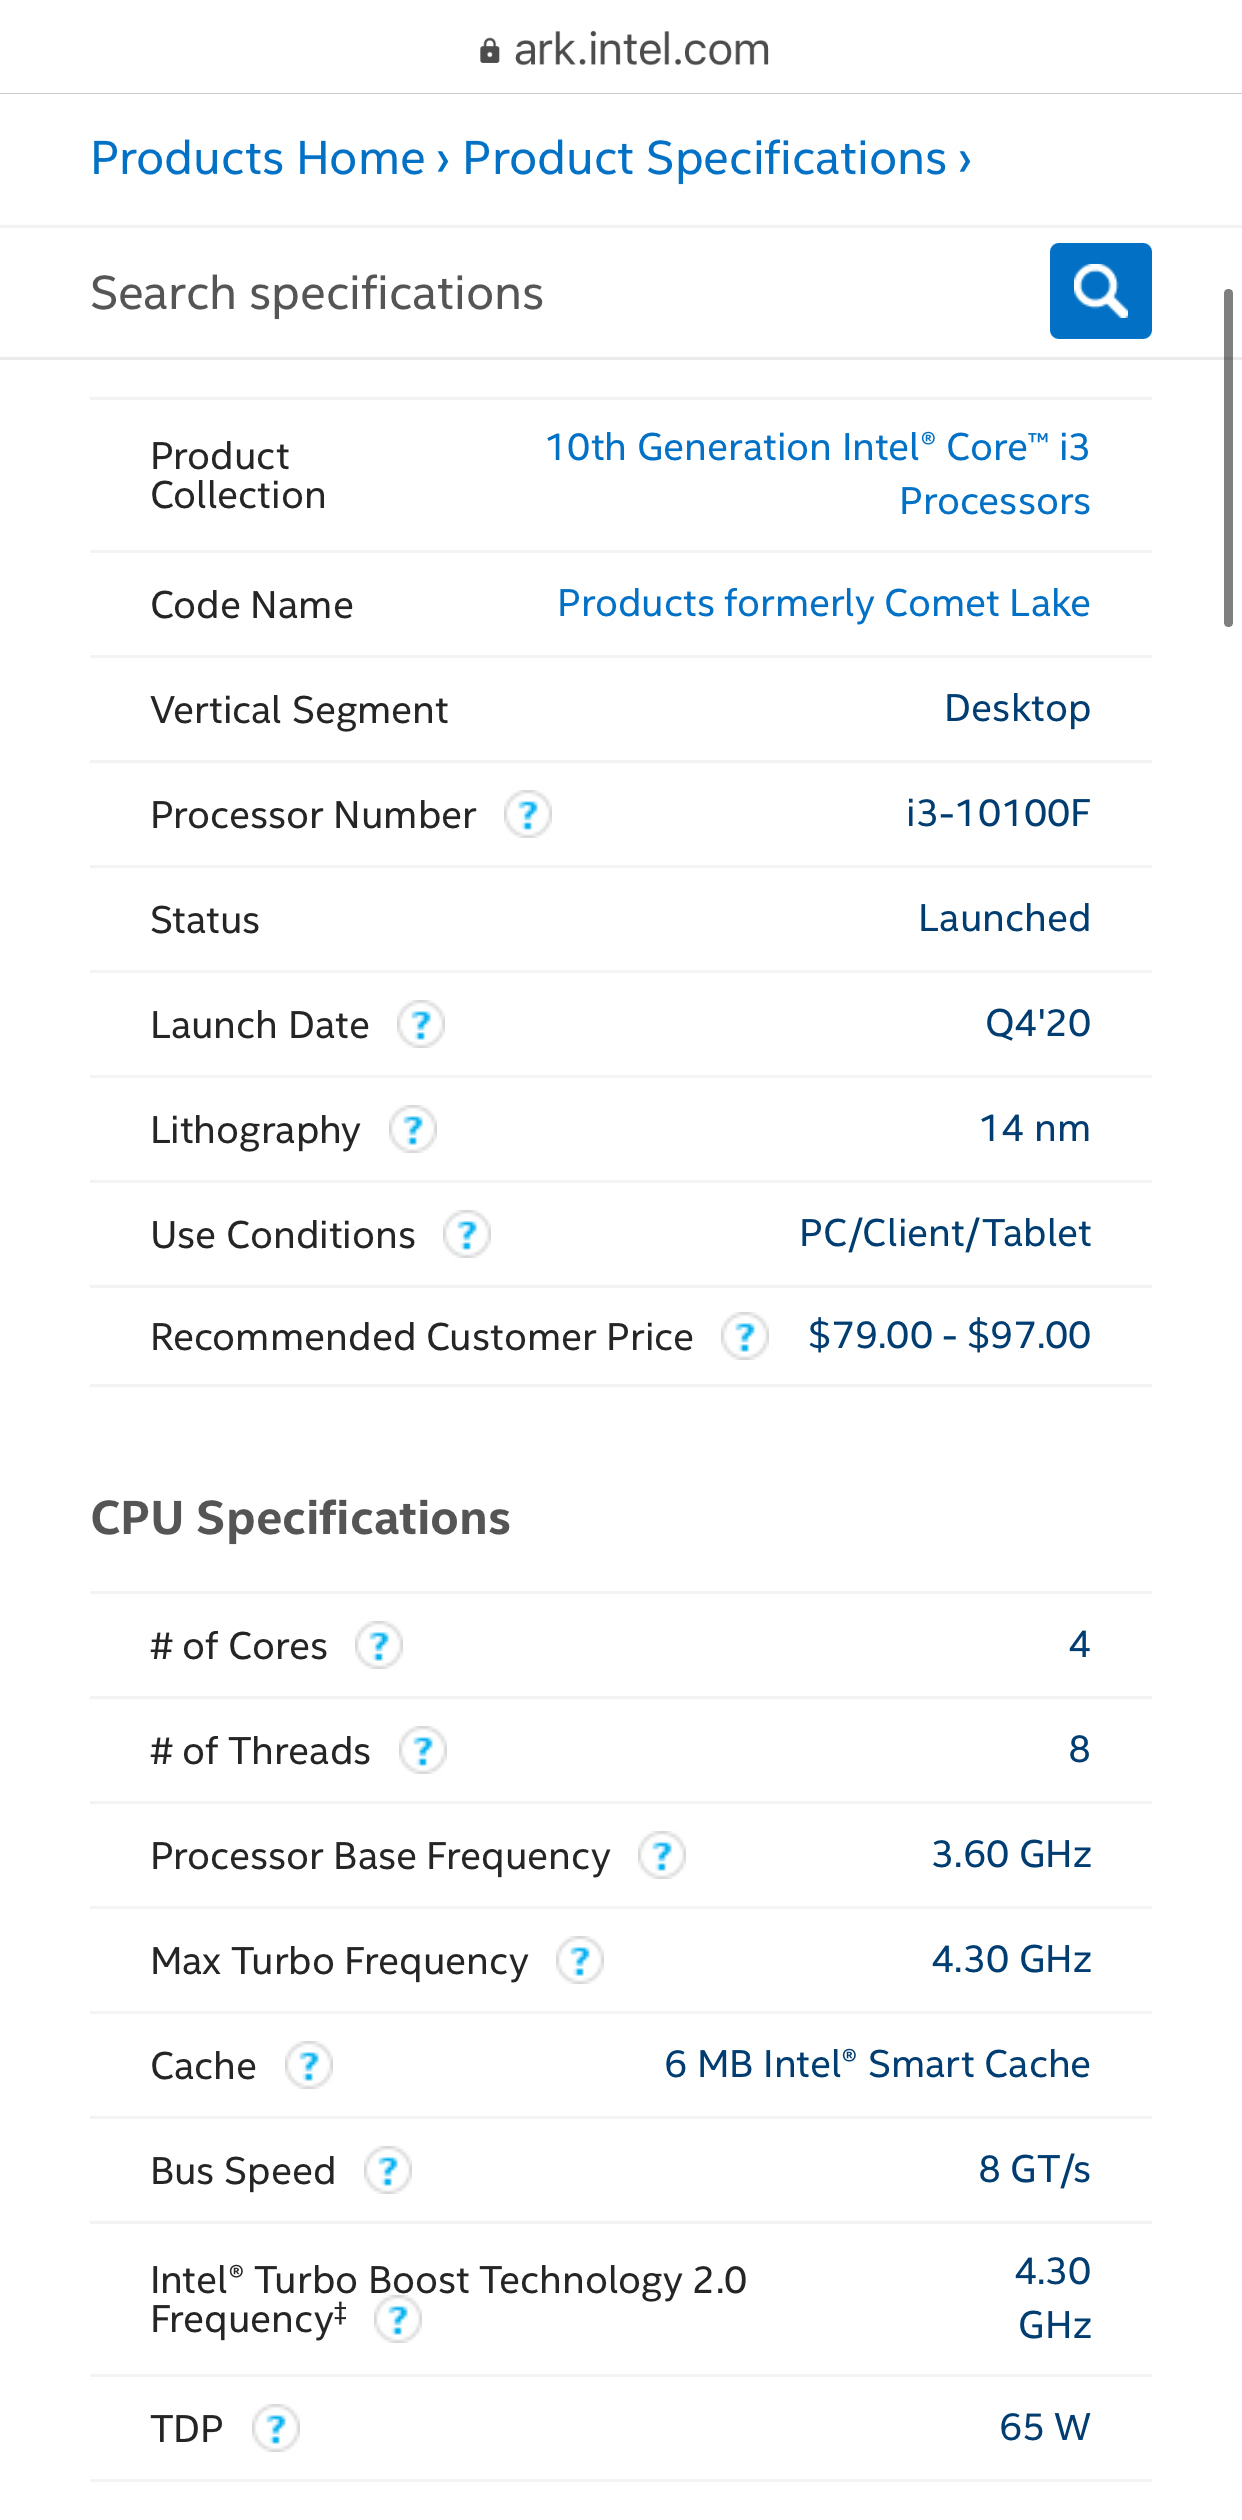 Intel chuẩn bị bán ra VXL Core i3-10100F với giá khá tốt